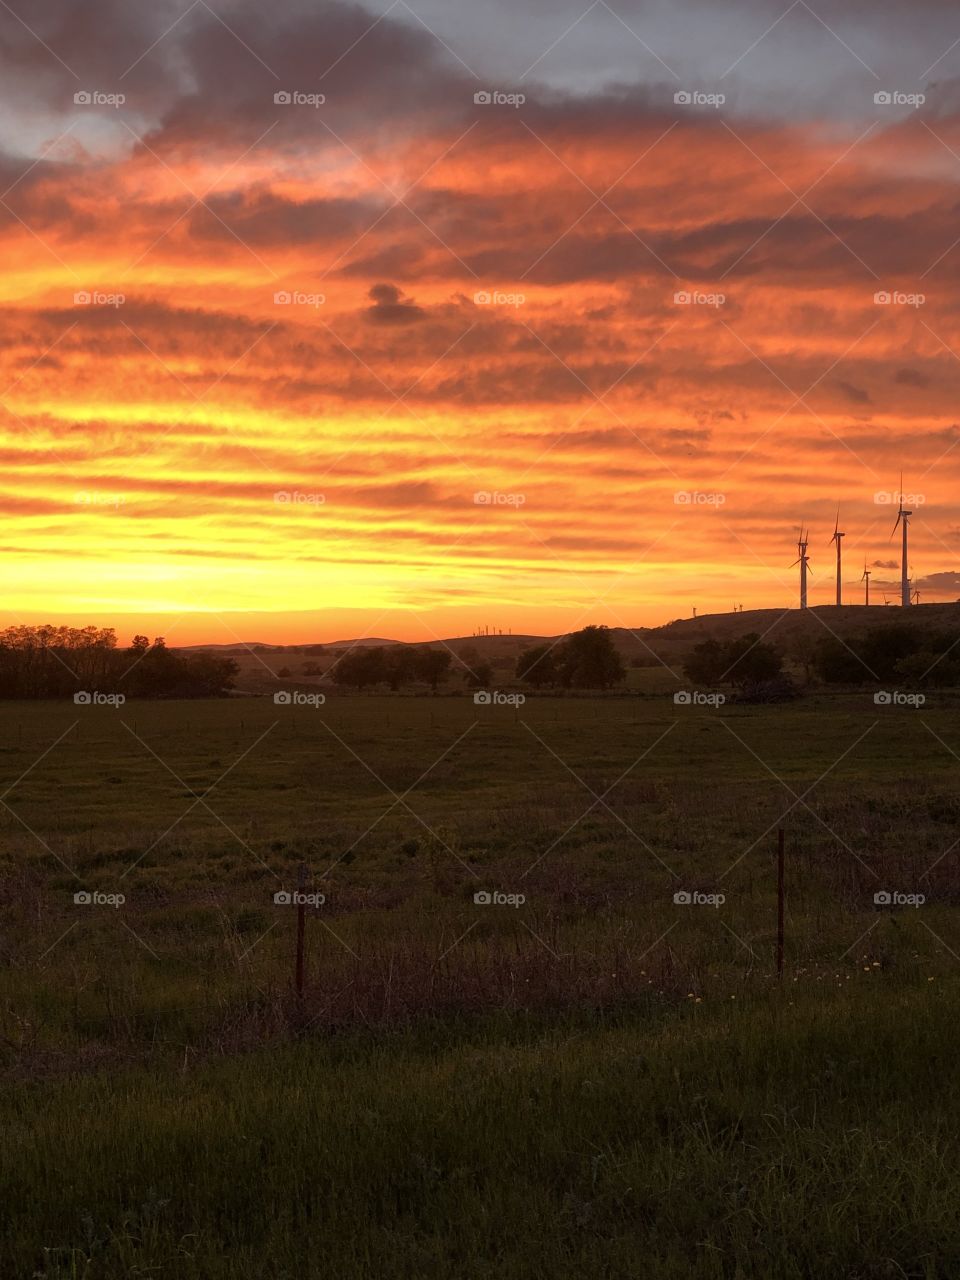 Oklahoma Sunset!